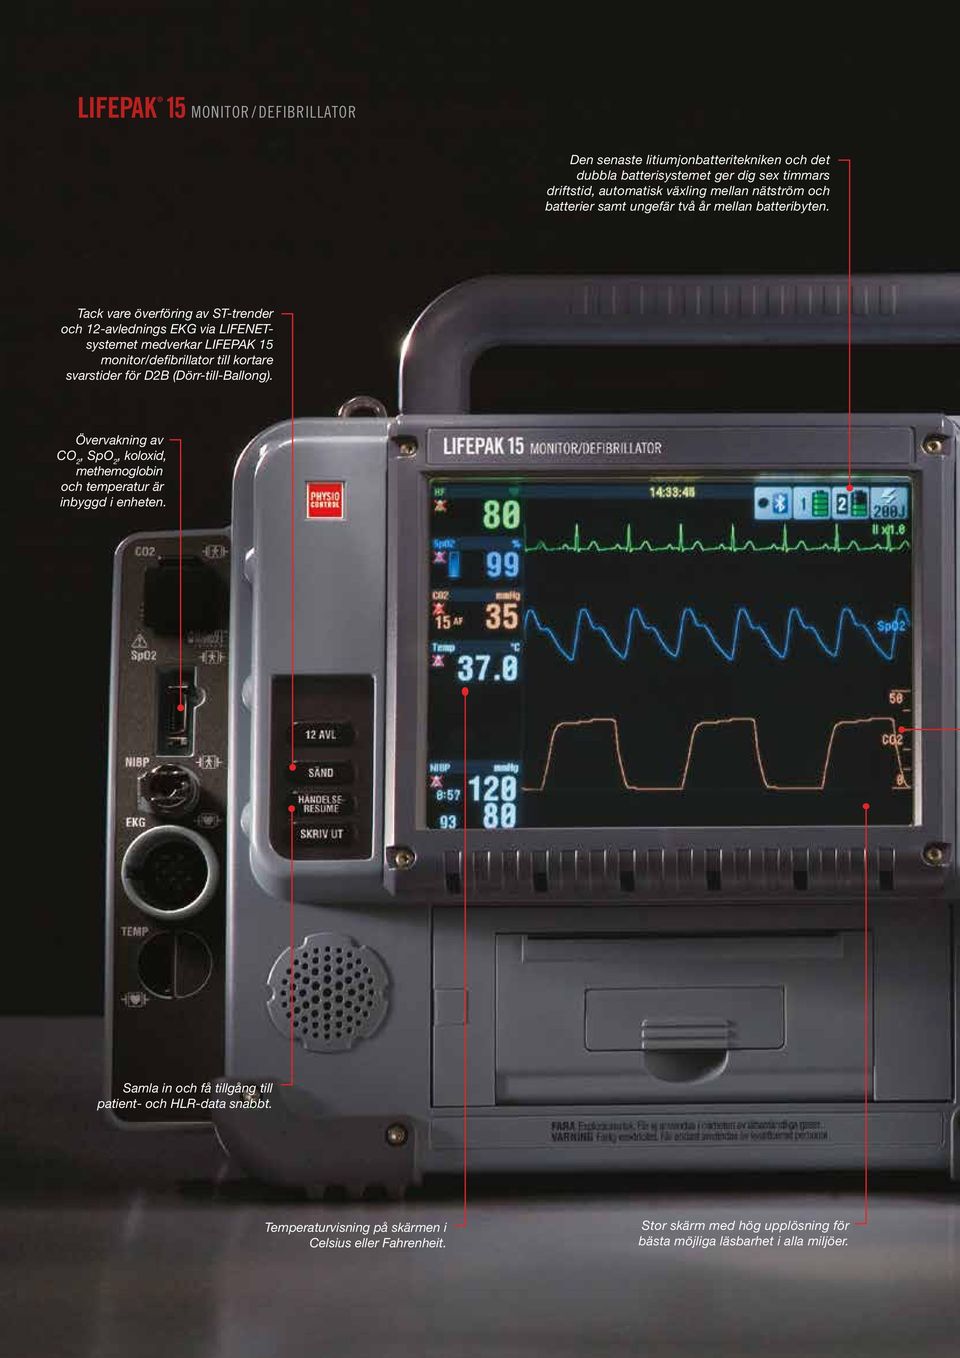 Tack vare överföring av ST-trender och 12-avlednings EKG via LIFENETsystemet medverkar LIFEPAK 15 monitor/defibrillator till kortare svarstider för D2B